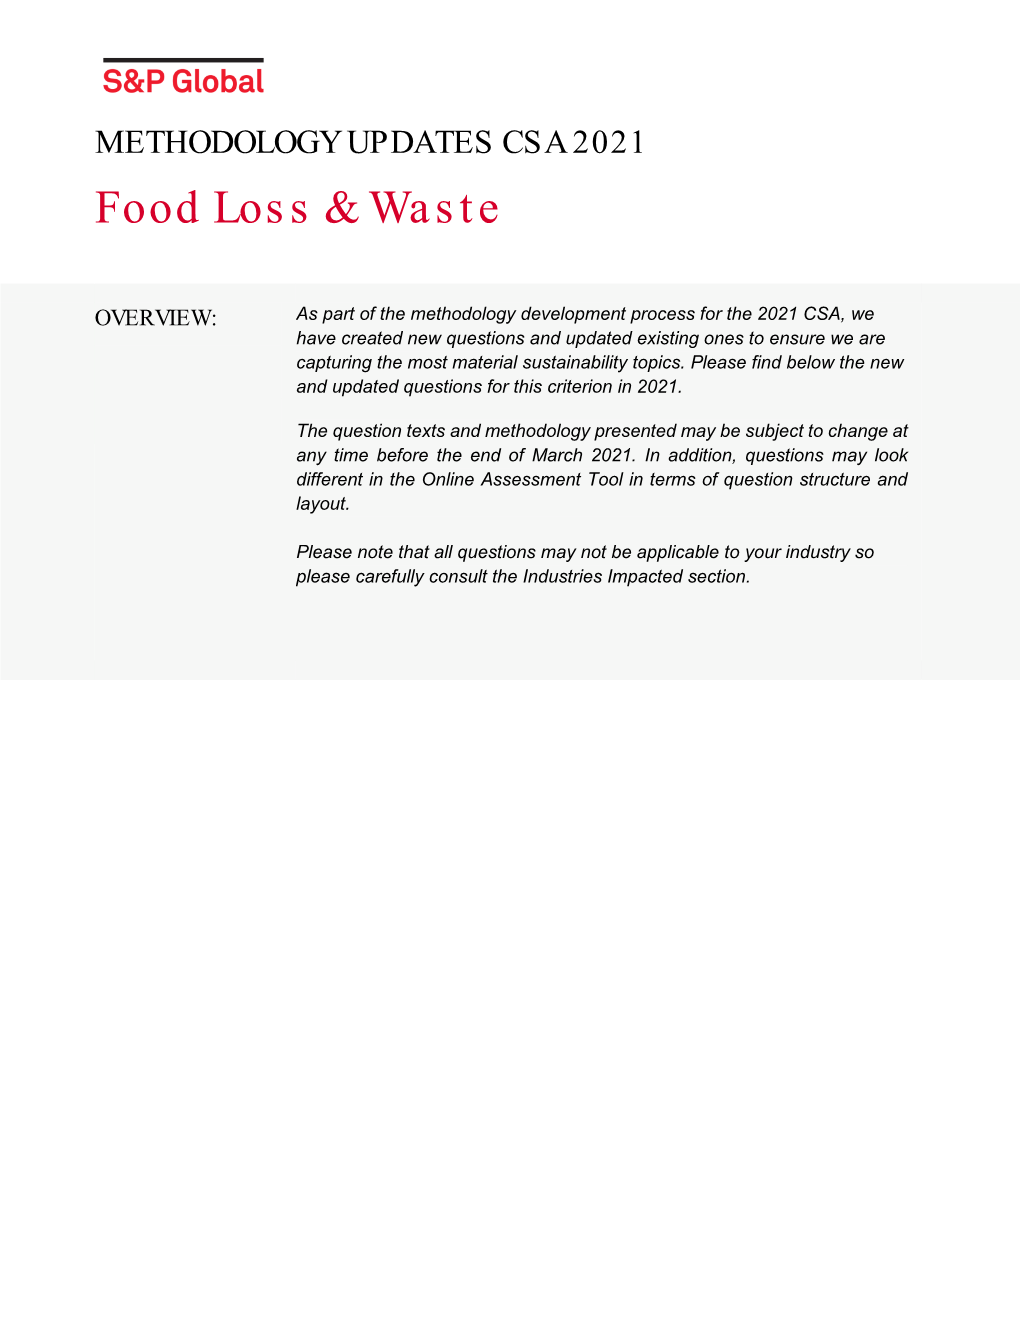 METHODOLOGY UPDATES CSA 2021 Food Loss & Waste